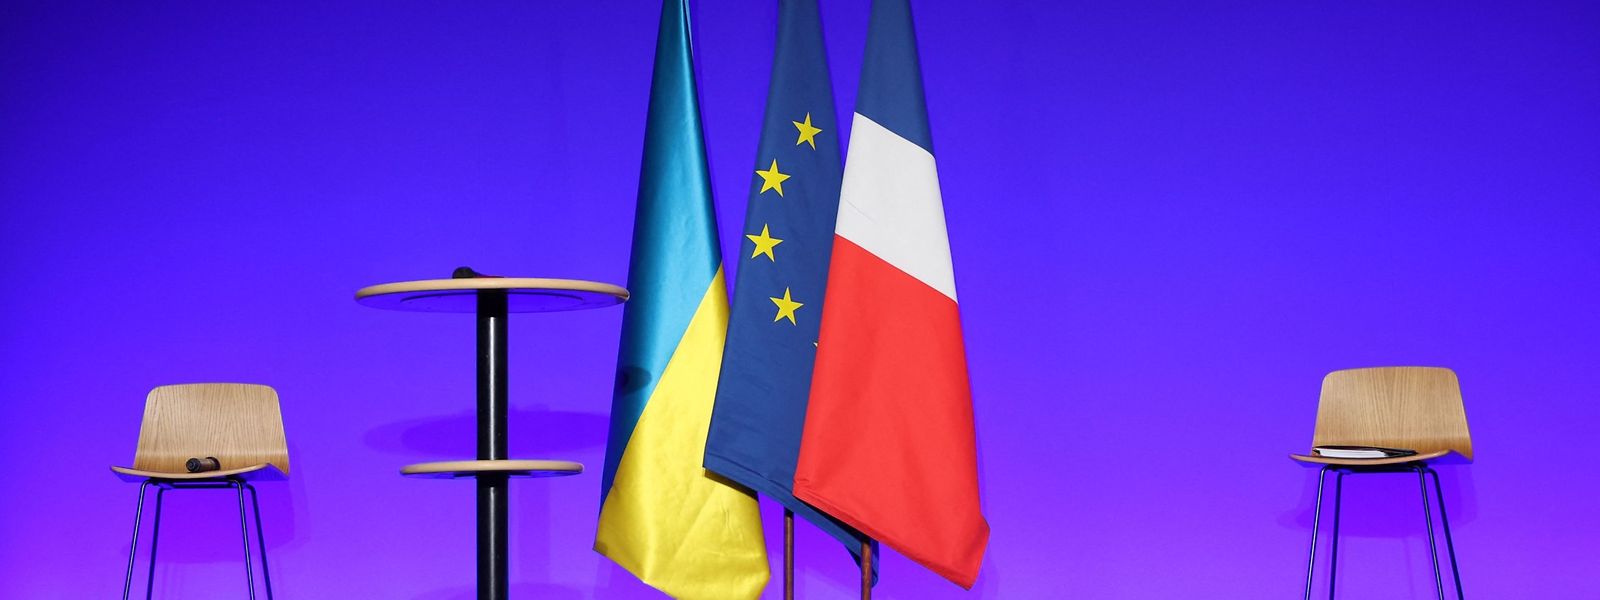 A bandeira da Ucrânia com a da União Europeia e de França, que atualmente assume a presidência rotativa do Conselho da União Europeia.